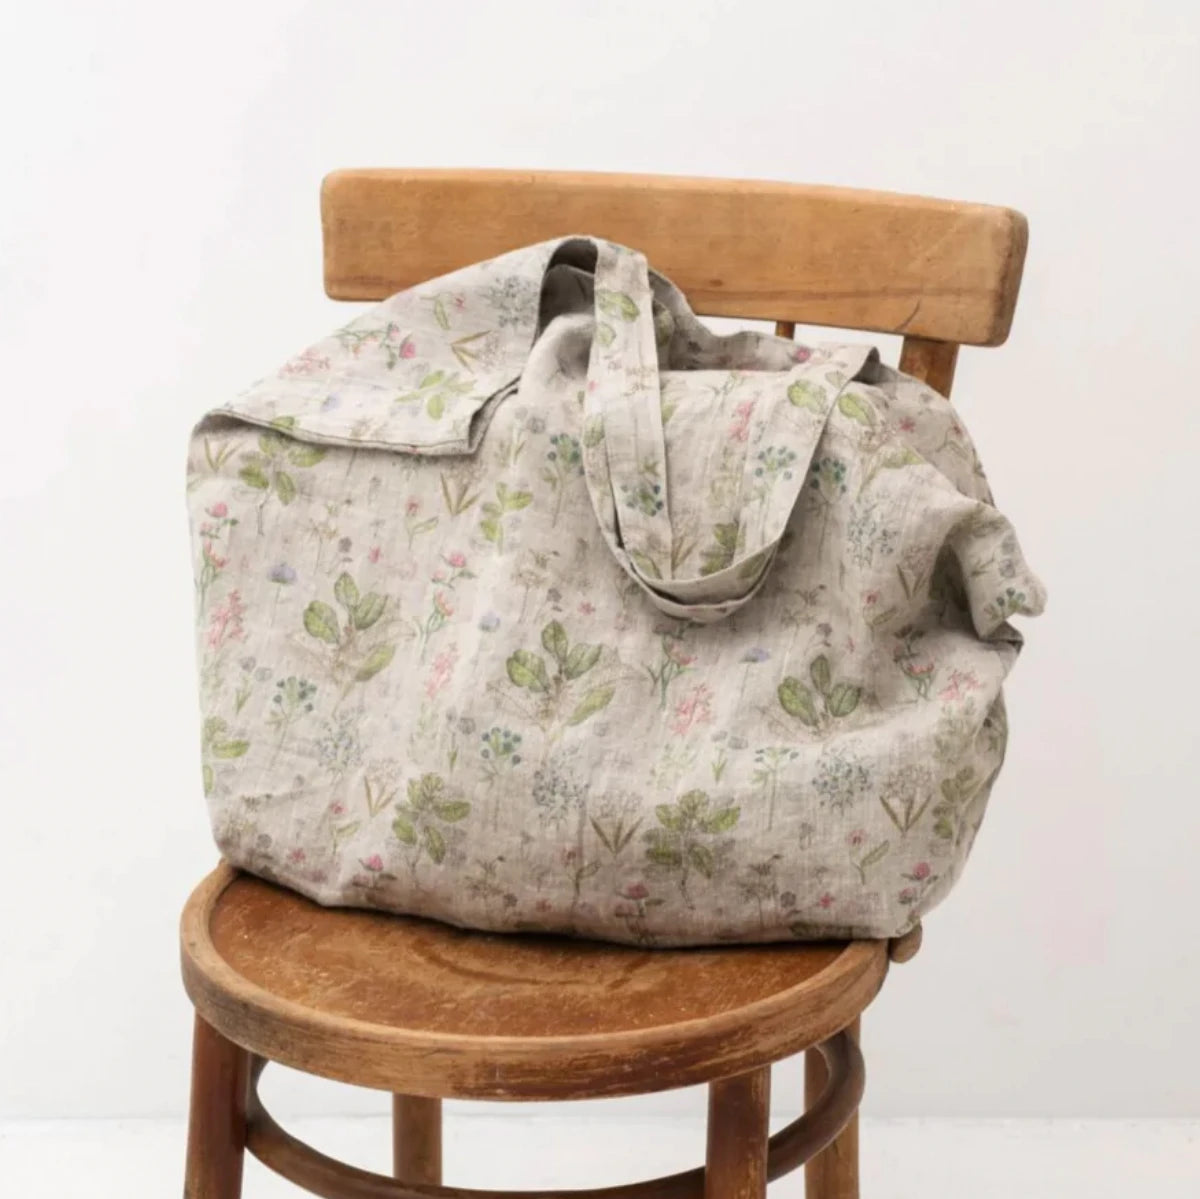 En stor tygväska i mönstrat linne med blommor står på en stol.